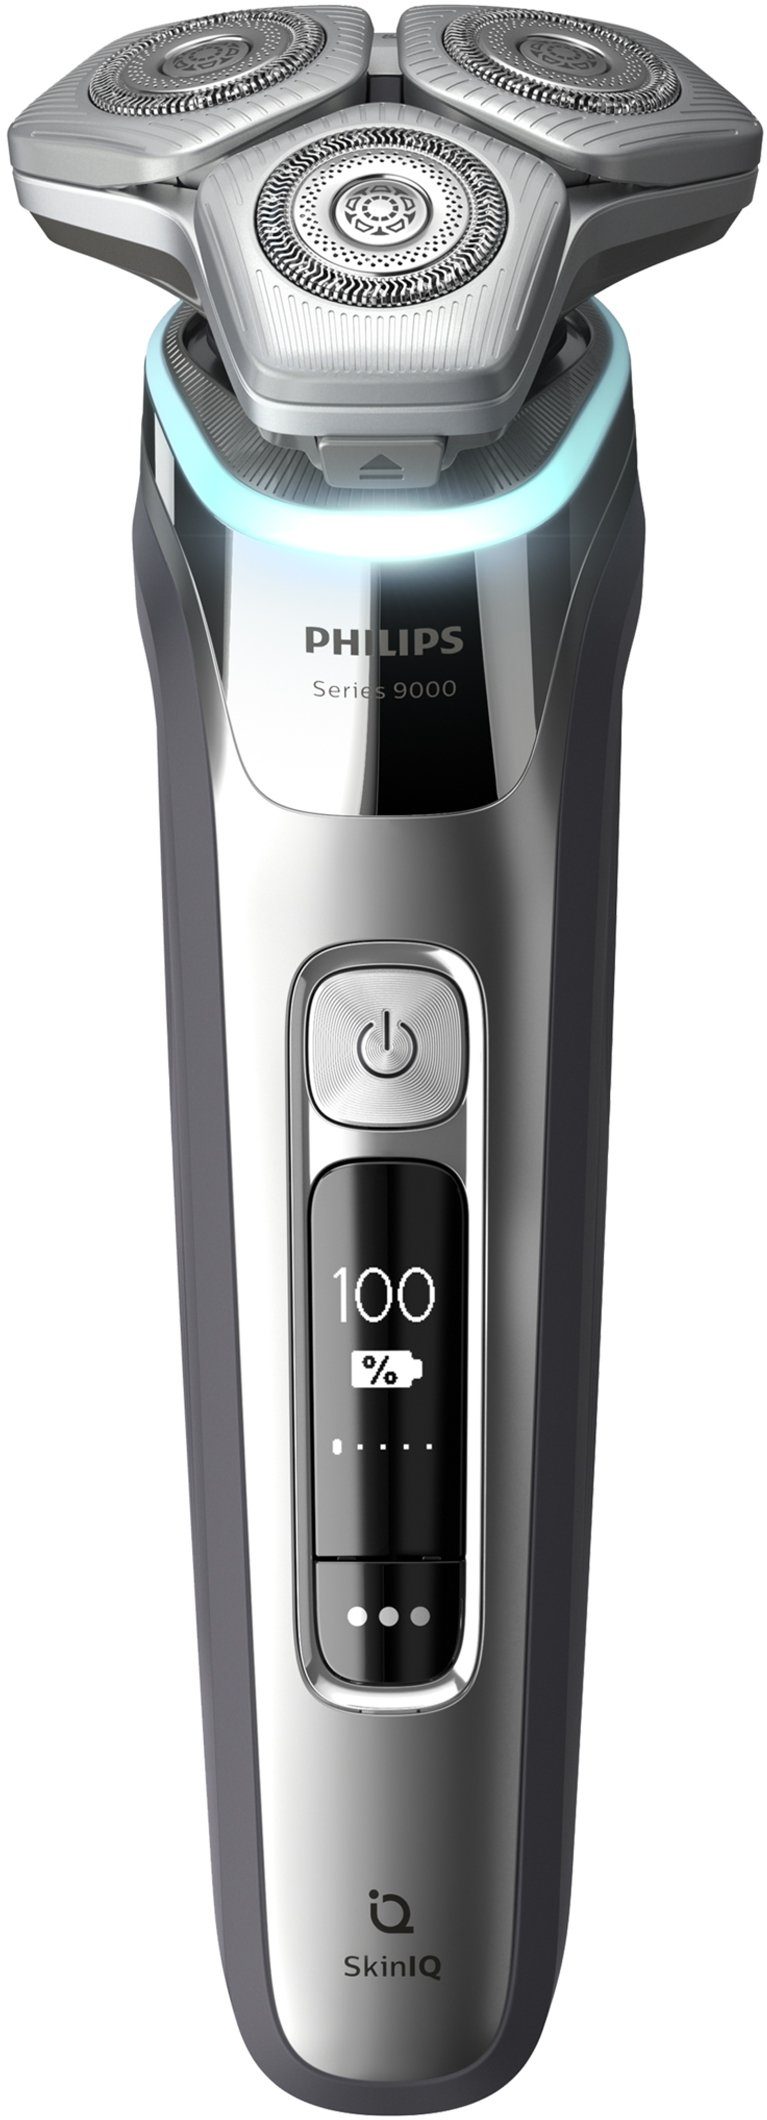 und Ladestation Skin Philips inkl. 9000 Elektrorasierer Shaver IQ Technologie, Etui mit series S9985/35,